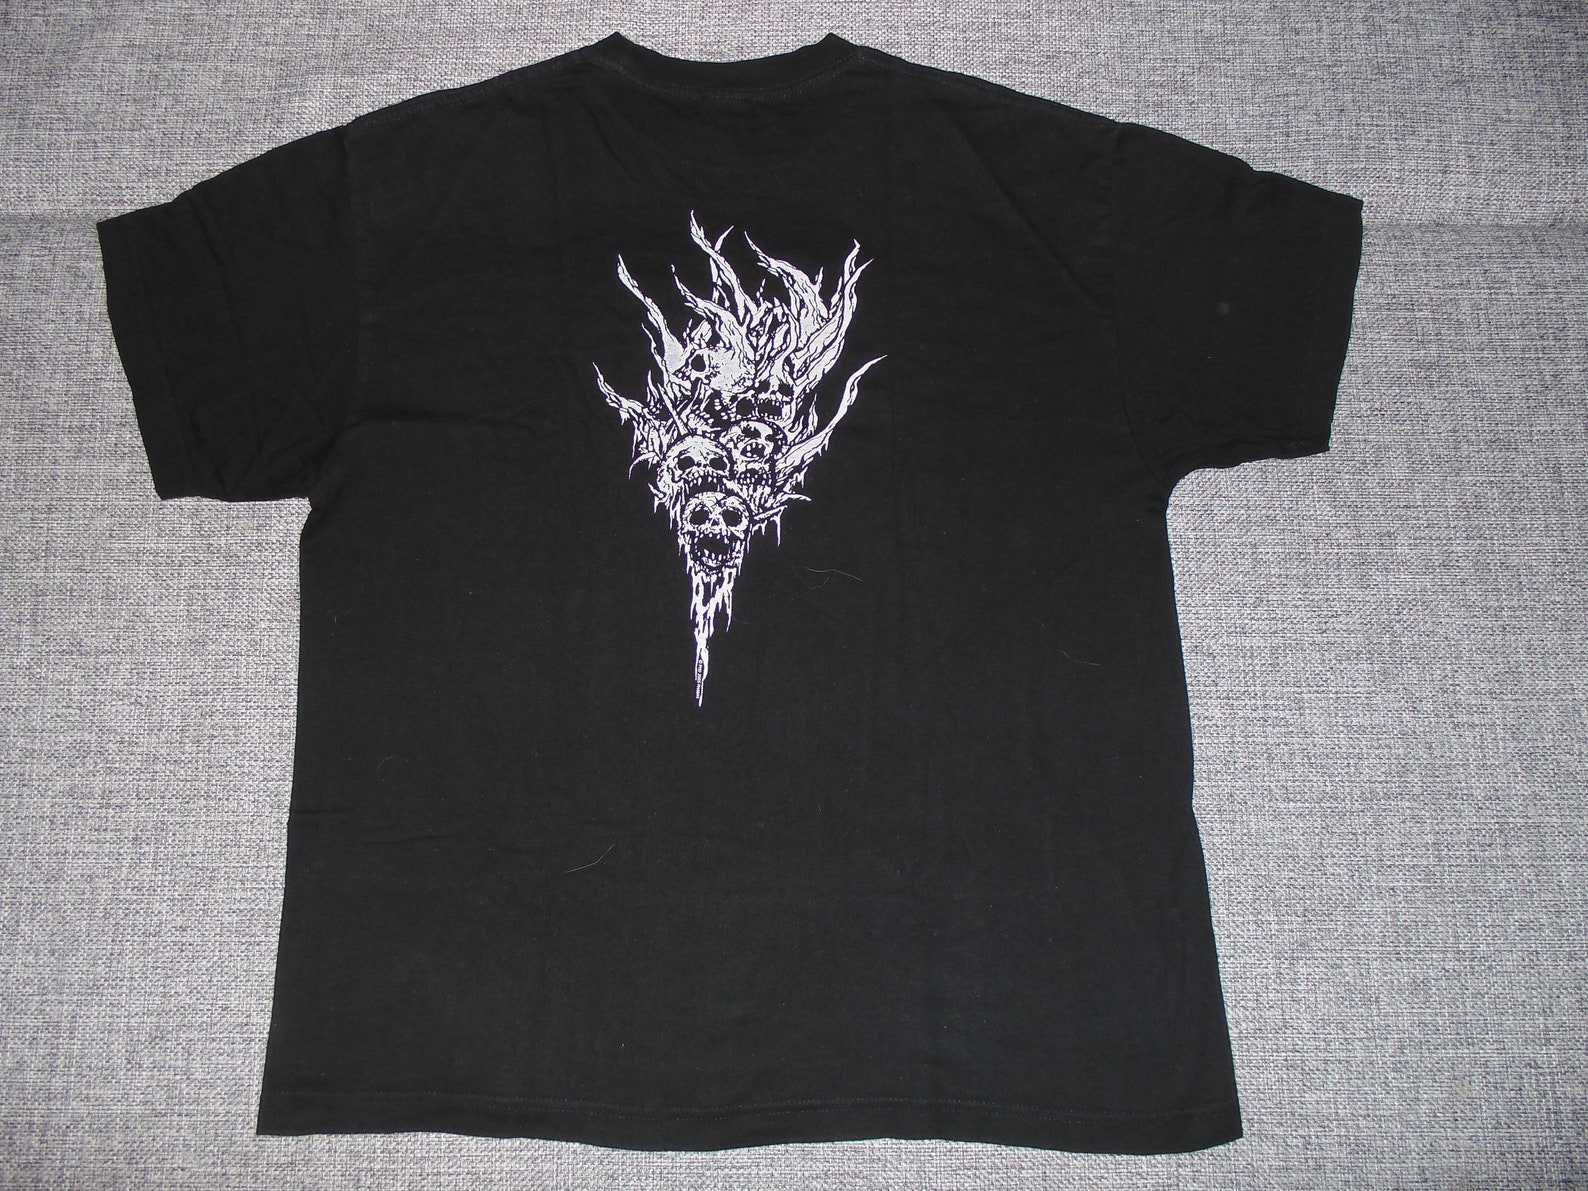 Tsjuder shirt L '00 black metal | Etsy